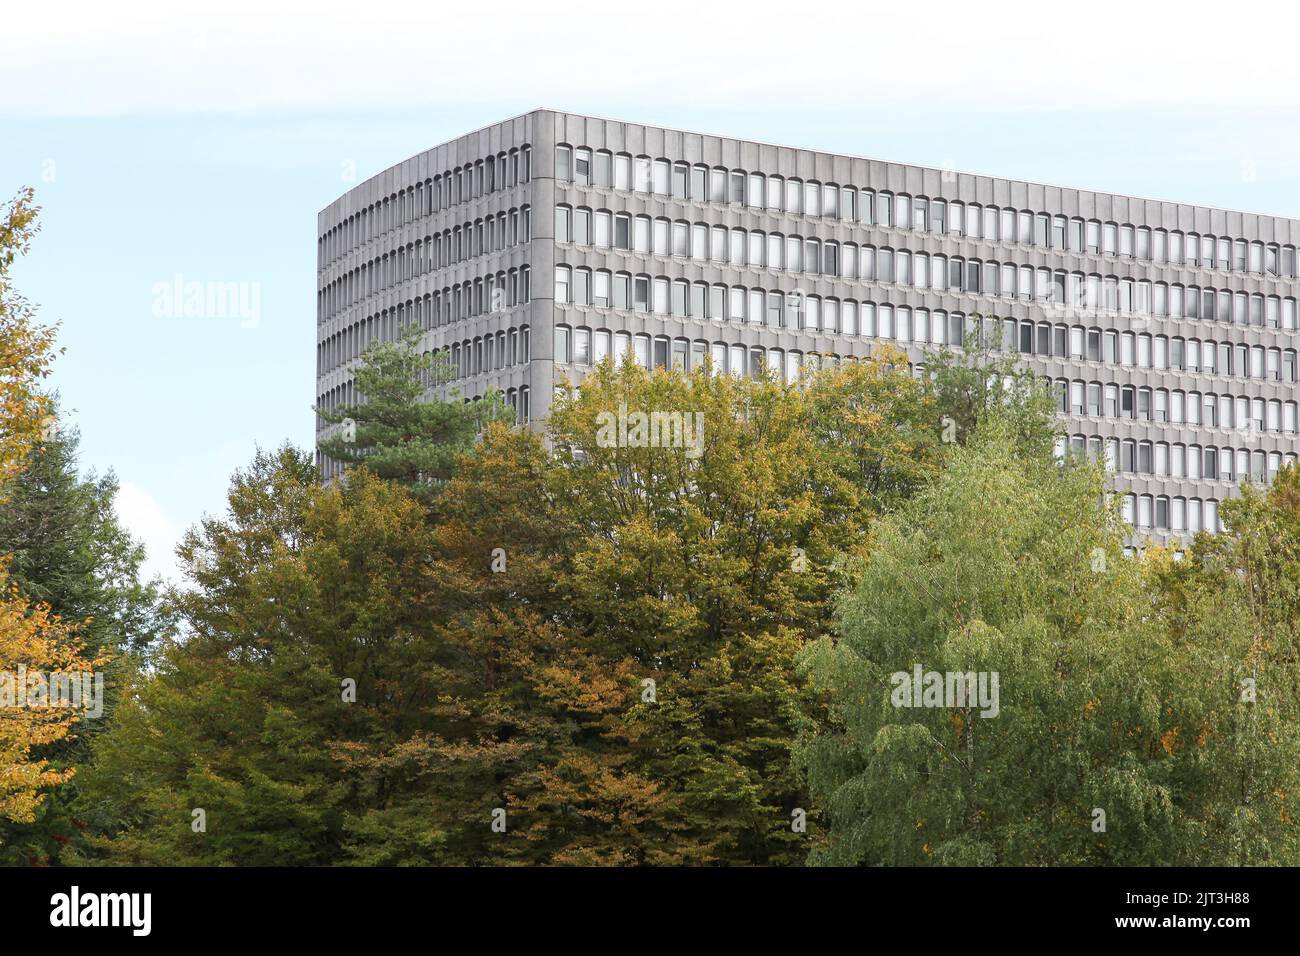 Ginebra, Suiza - 1 de octubre de 2017: Edificio de oficinas internacionales del trabajo y sede en Ginebra Foto de stock